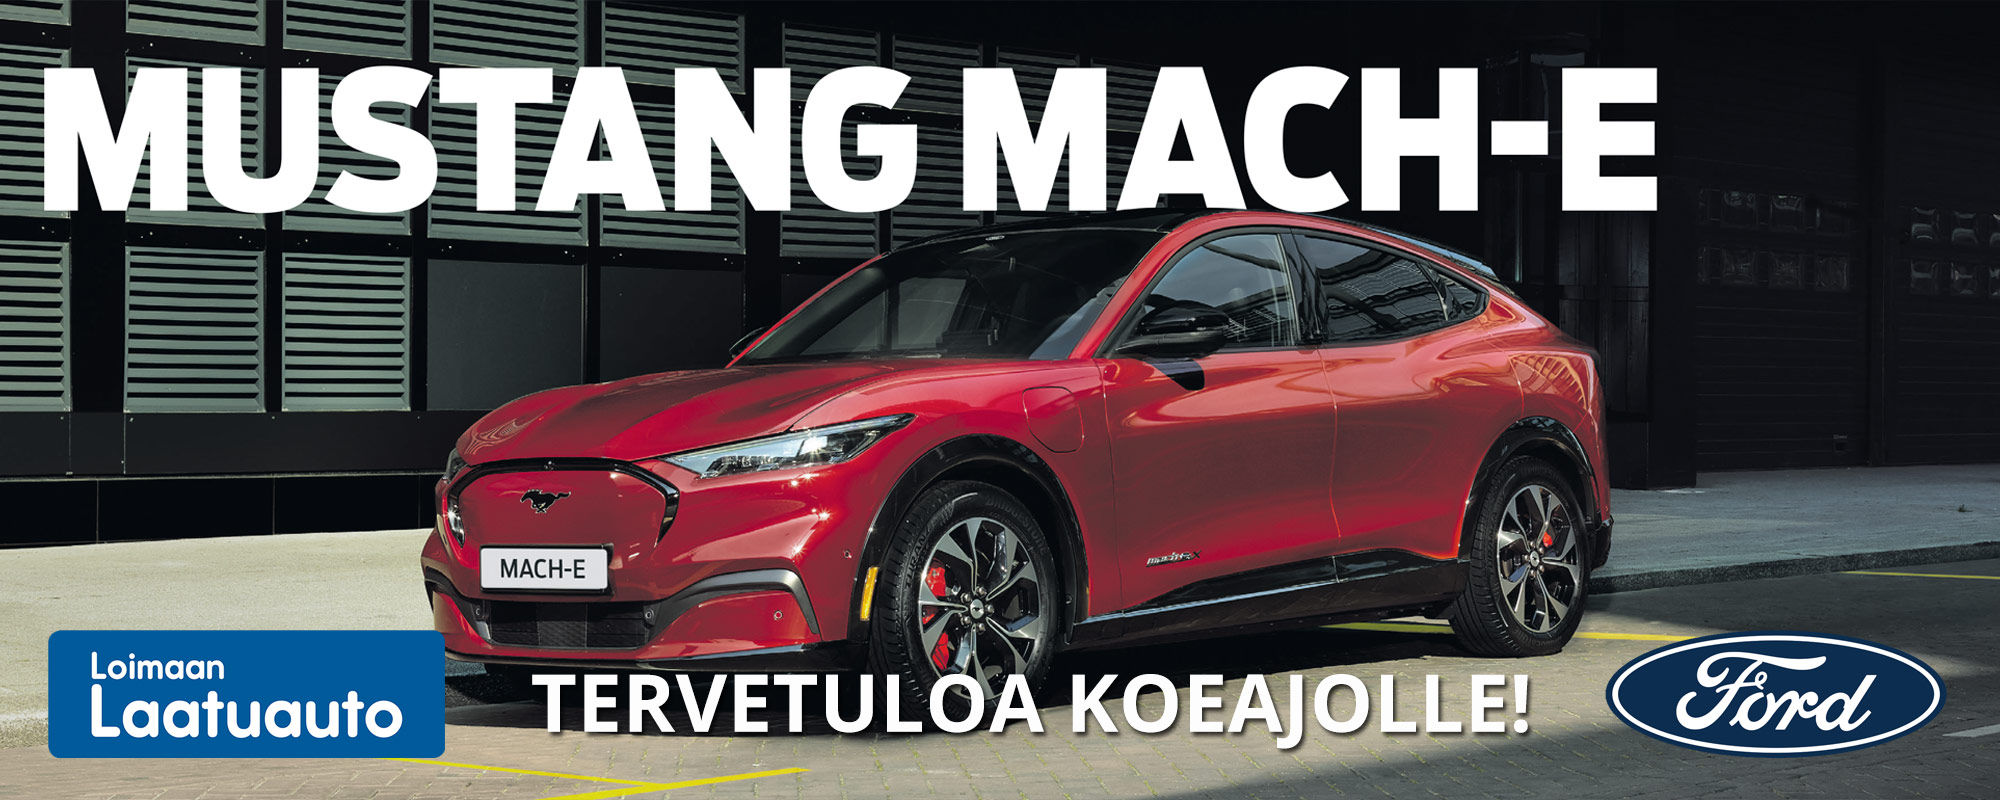 Mustang Mach-E | Tervetuloa koeajolle Loimaan Laatuautoon!